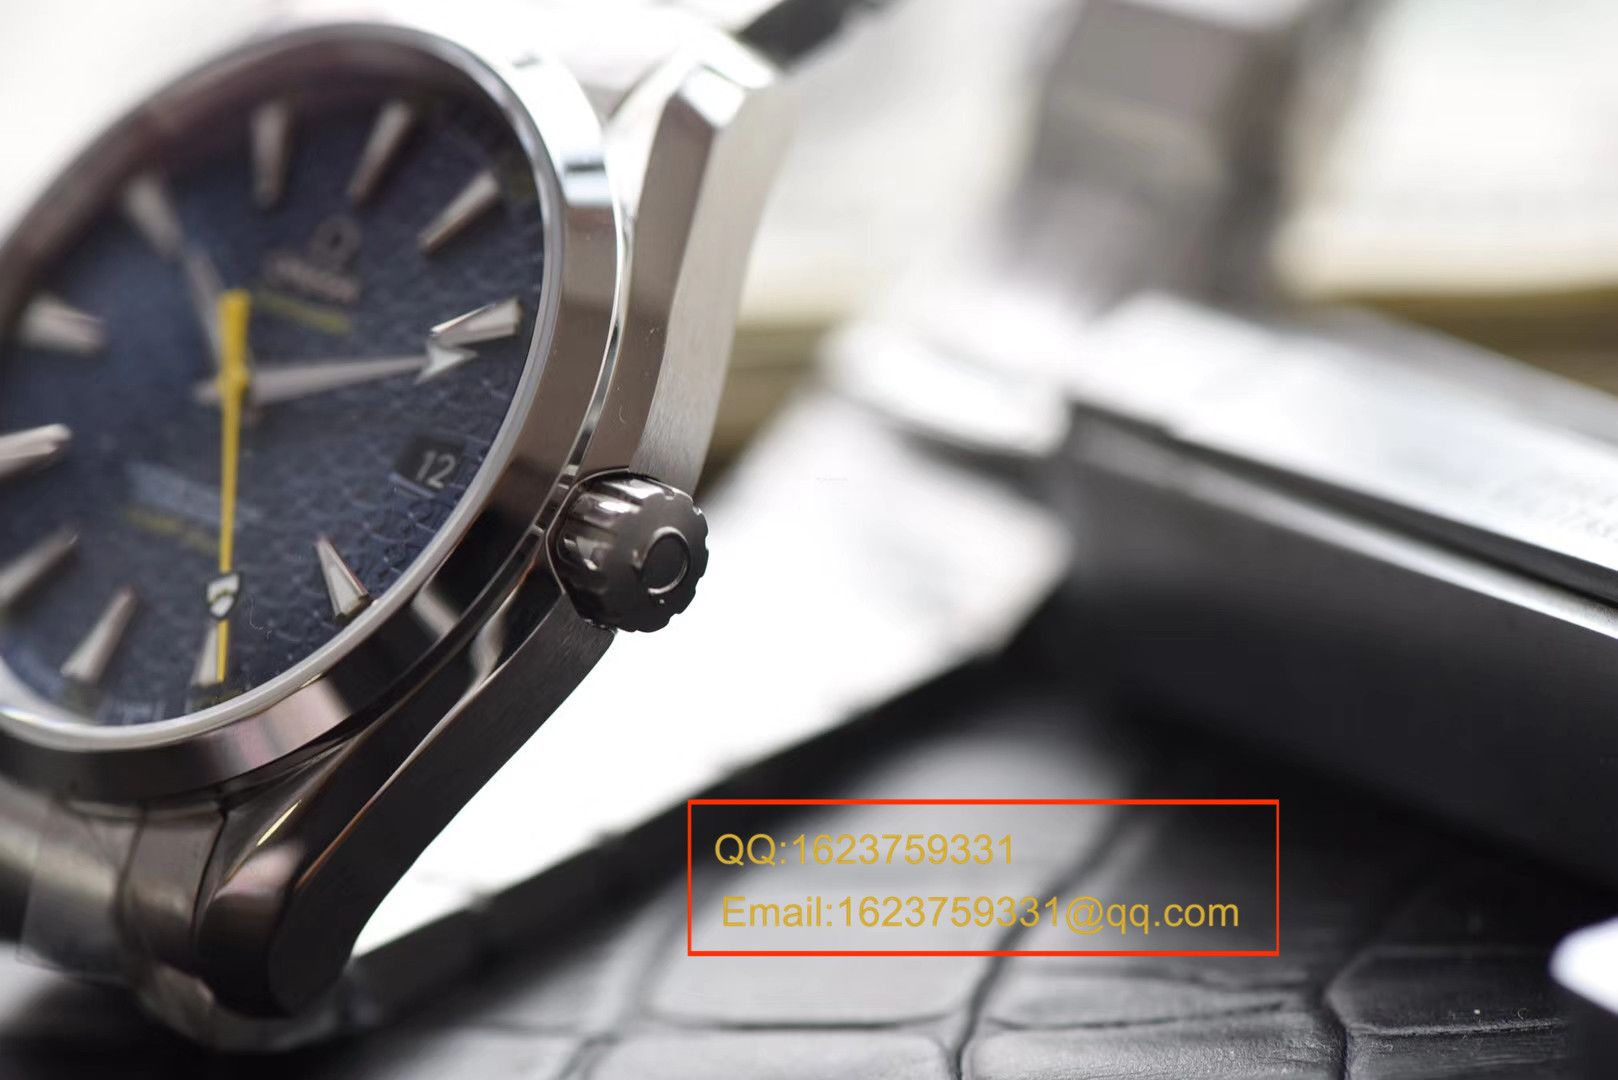 【KW一比一超A高仿手表】欧米茄海马系列 007詹姆斯邦德限量版 231.10.42.21.03.004机械腕表 